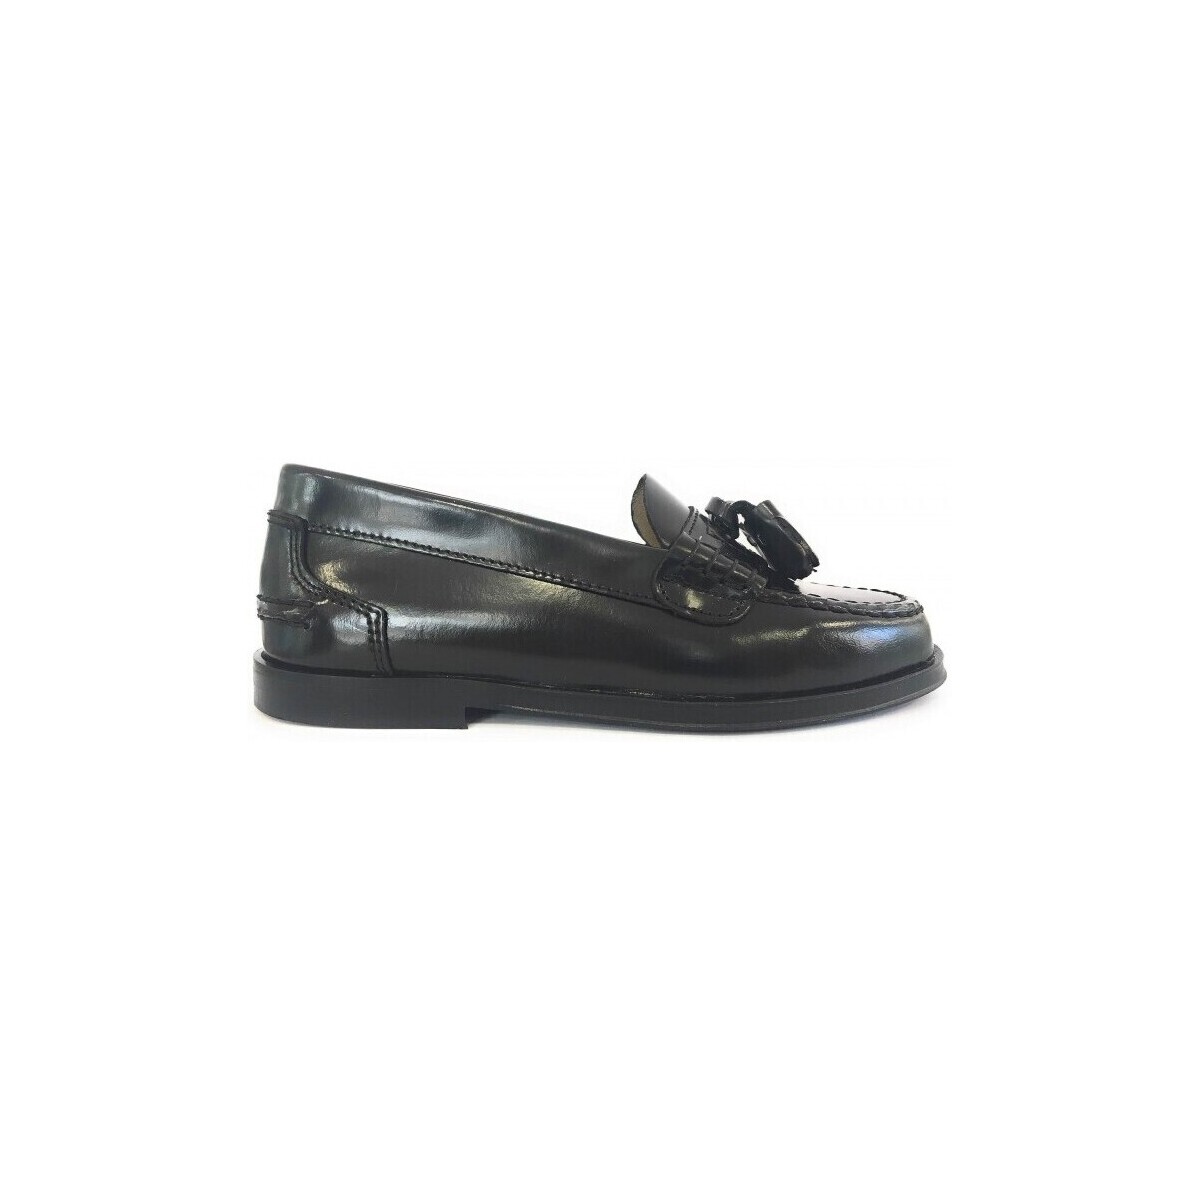 Cipők Mokkaszínek Yowas 23995-24 Fekete 